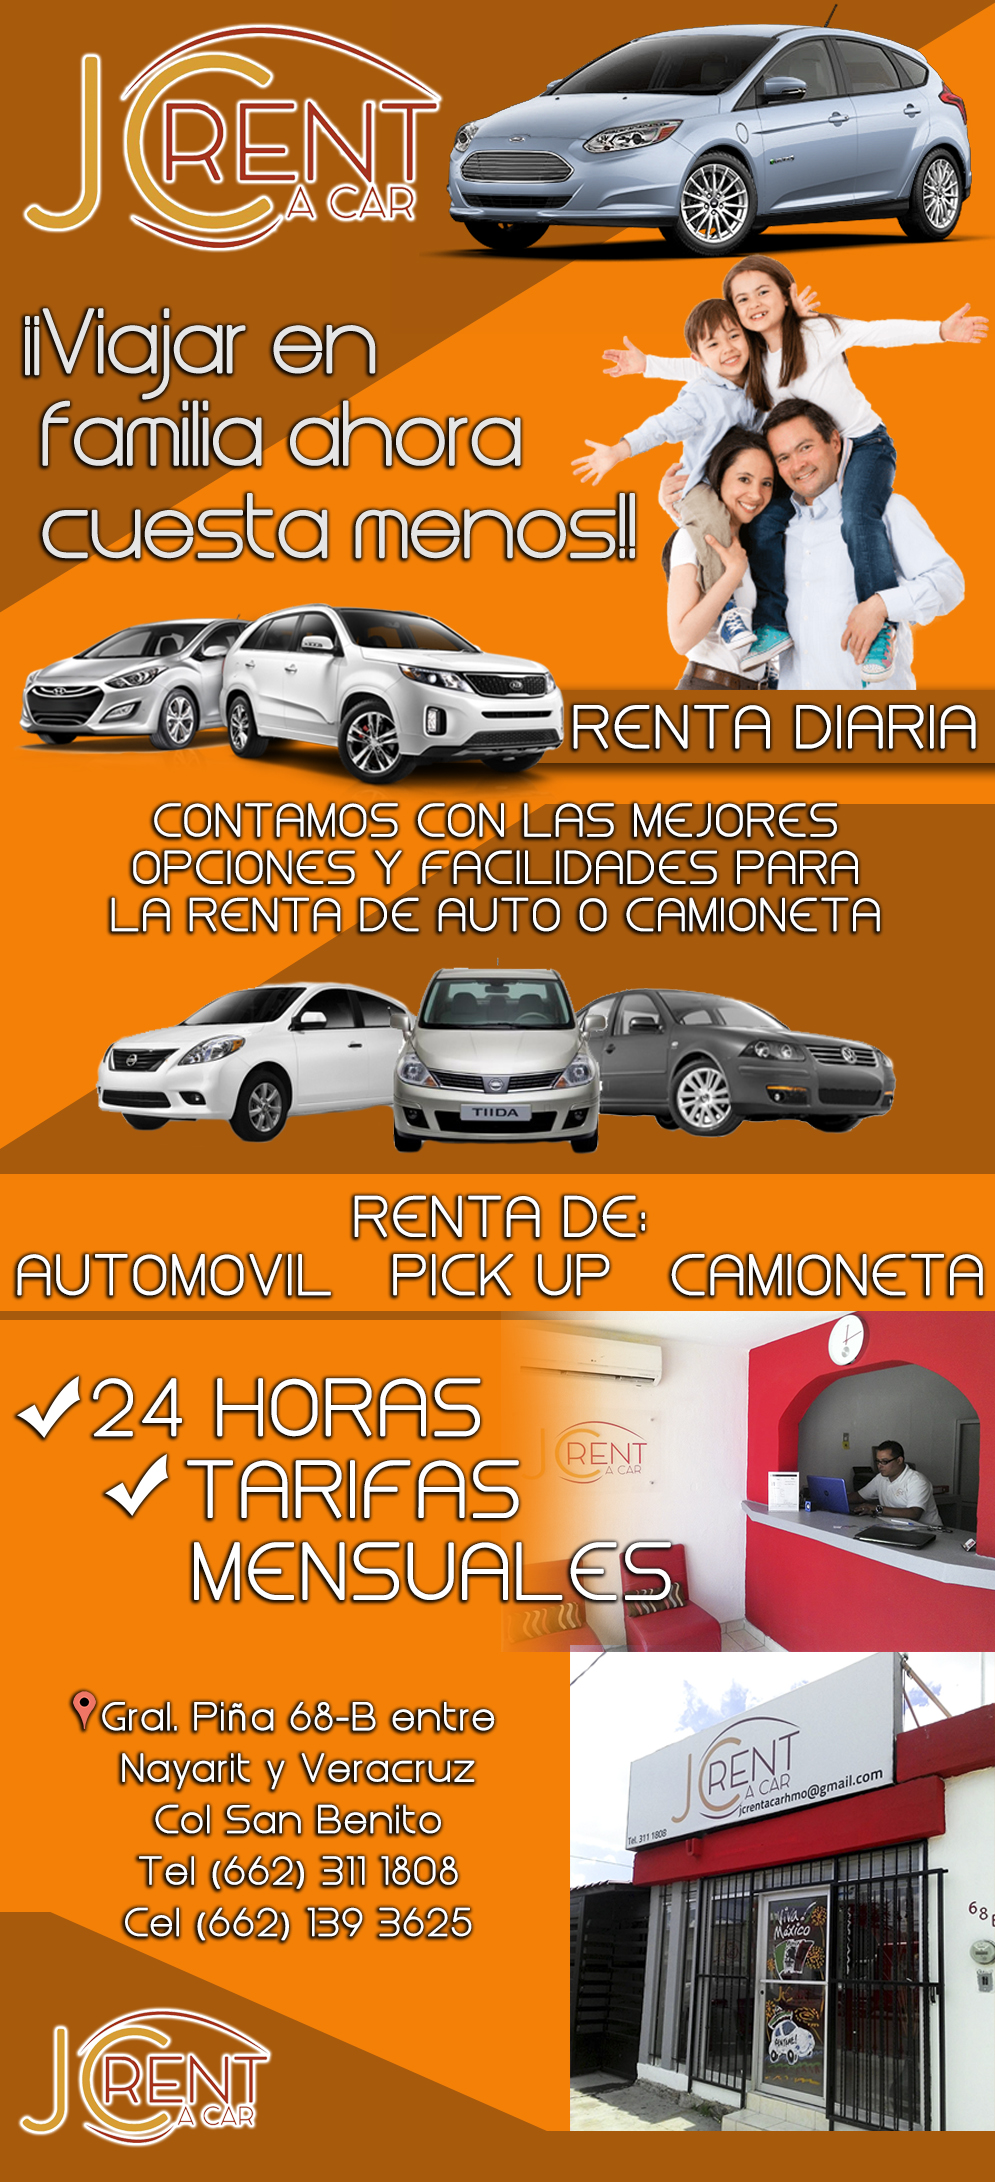 JC RENT A CAR -Autos en Renta en Hermosillo, Sonora. Viajar en Familia ahora cuesta menos!! Tenemos las mejores opciones y facilidades para la renta de auto o camioneta.
